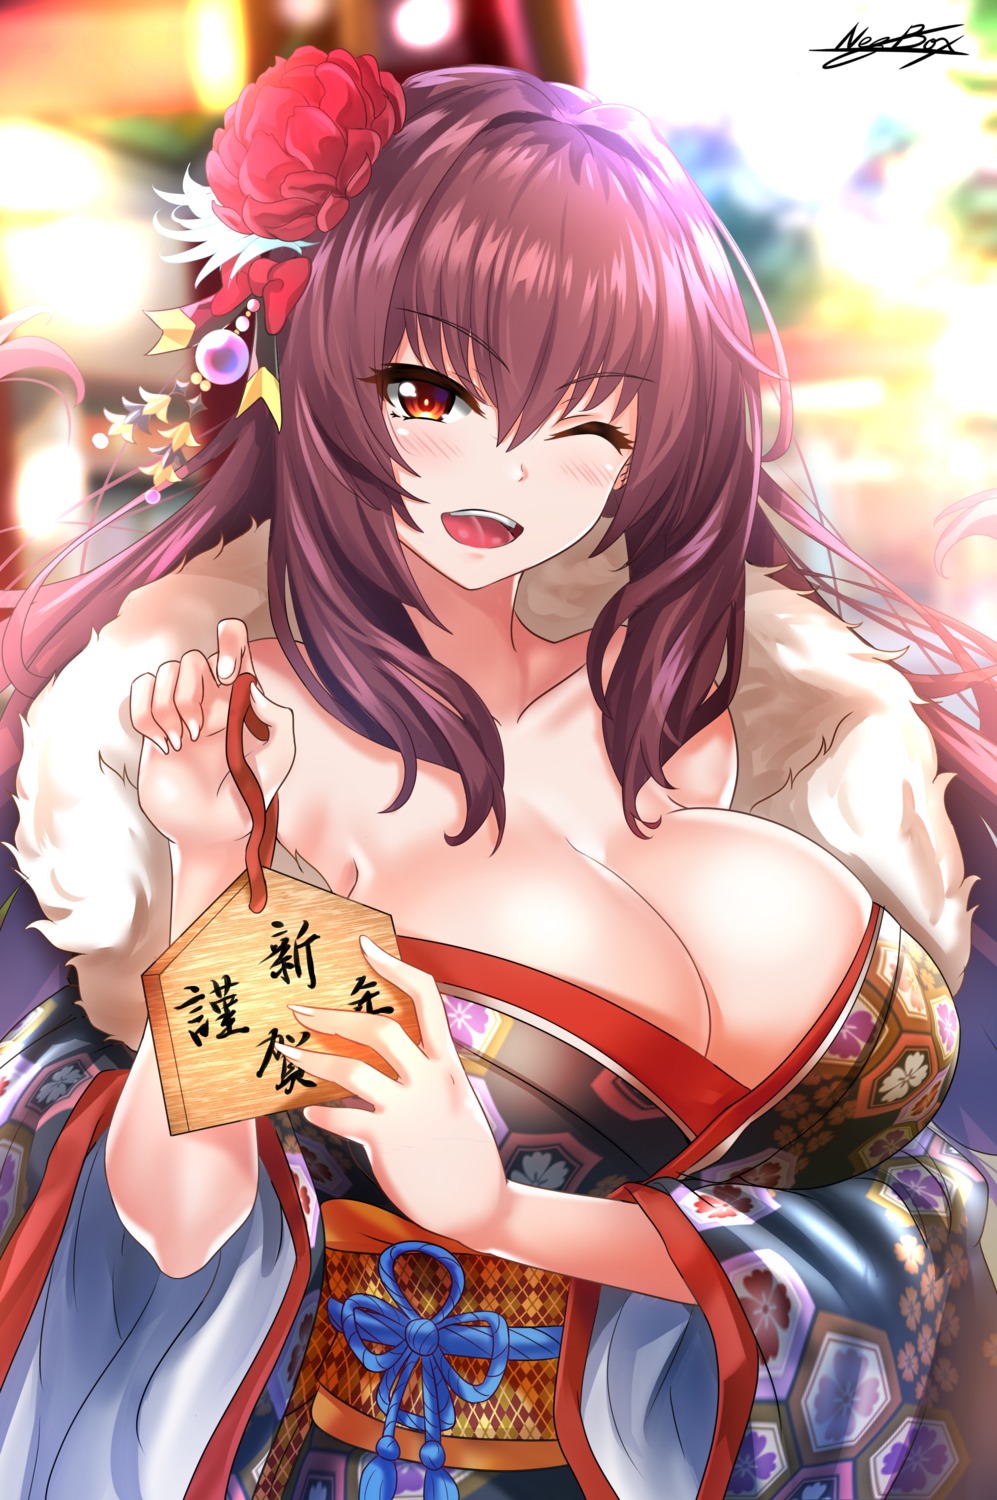 cleavage fate/grand_order kimono nez-kun no_bra open_shirt scathach_(fate/grand_order)